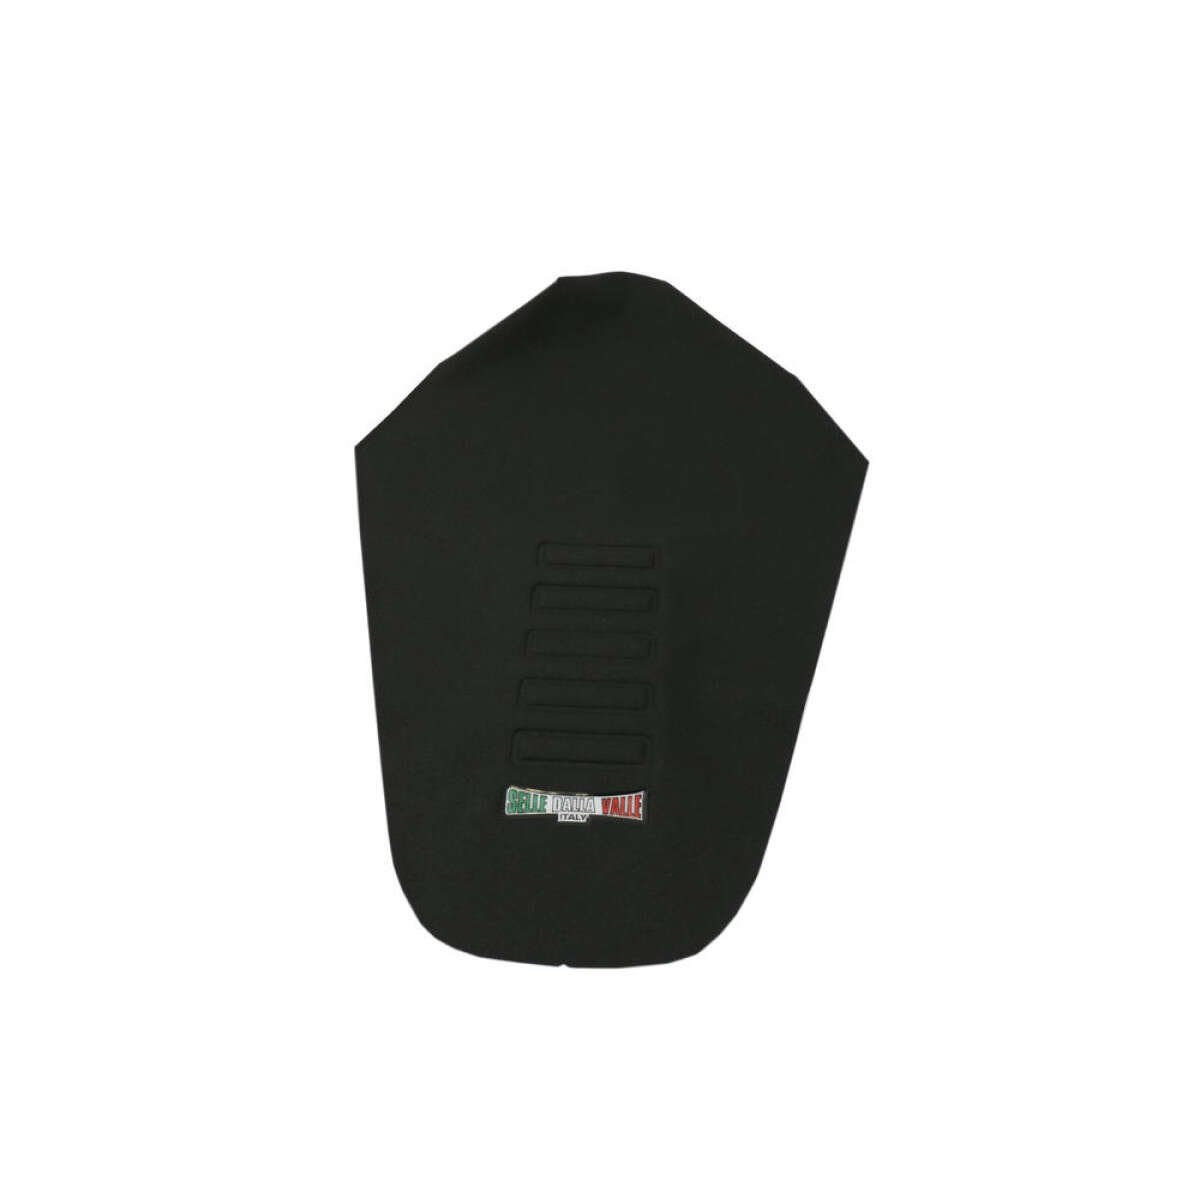 Selle Dalla Valle Seat Cover Wave Honda CR-F 250 10-13, CR-F 450 09-12, Black